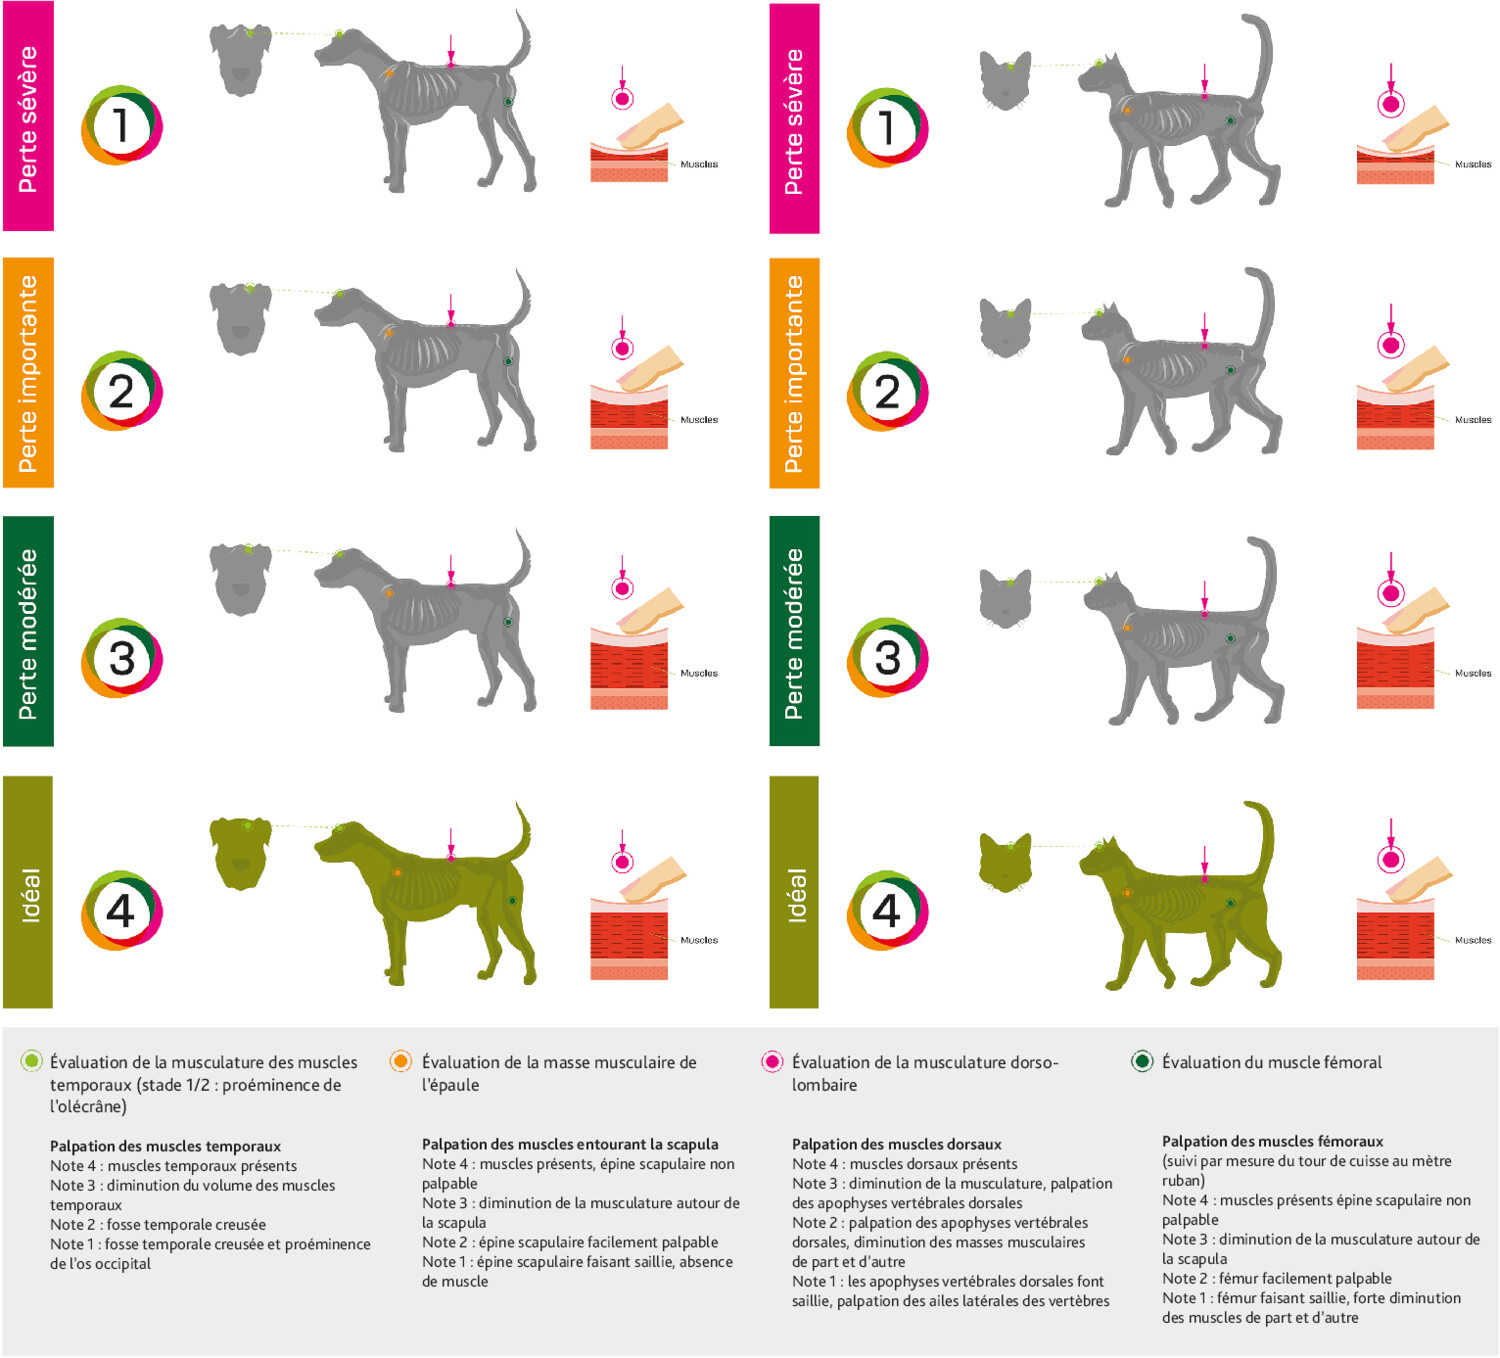 Les répercussions nutritionnelles de la stérilisation des chiens et des chats - Figure 4